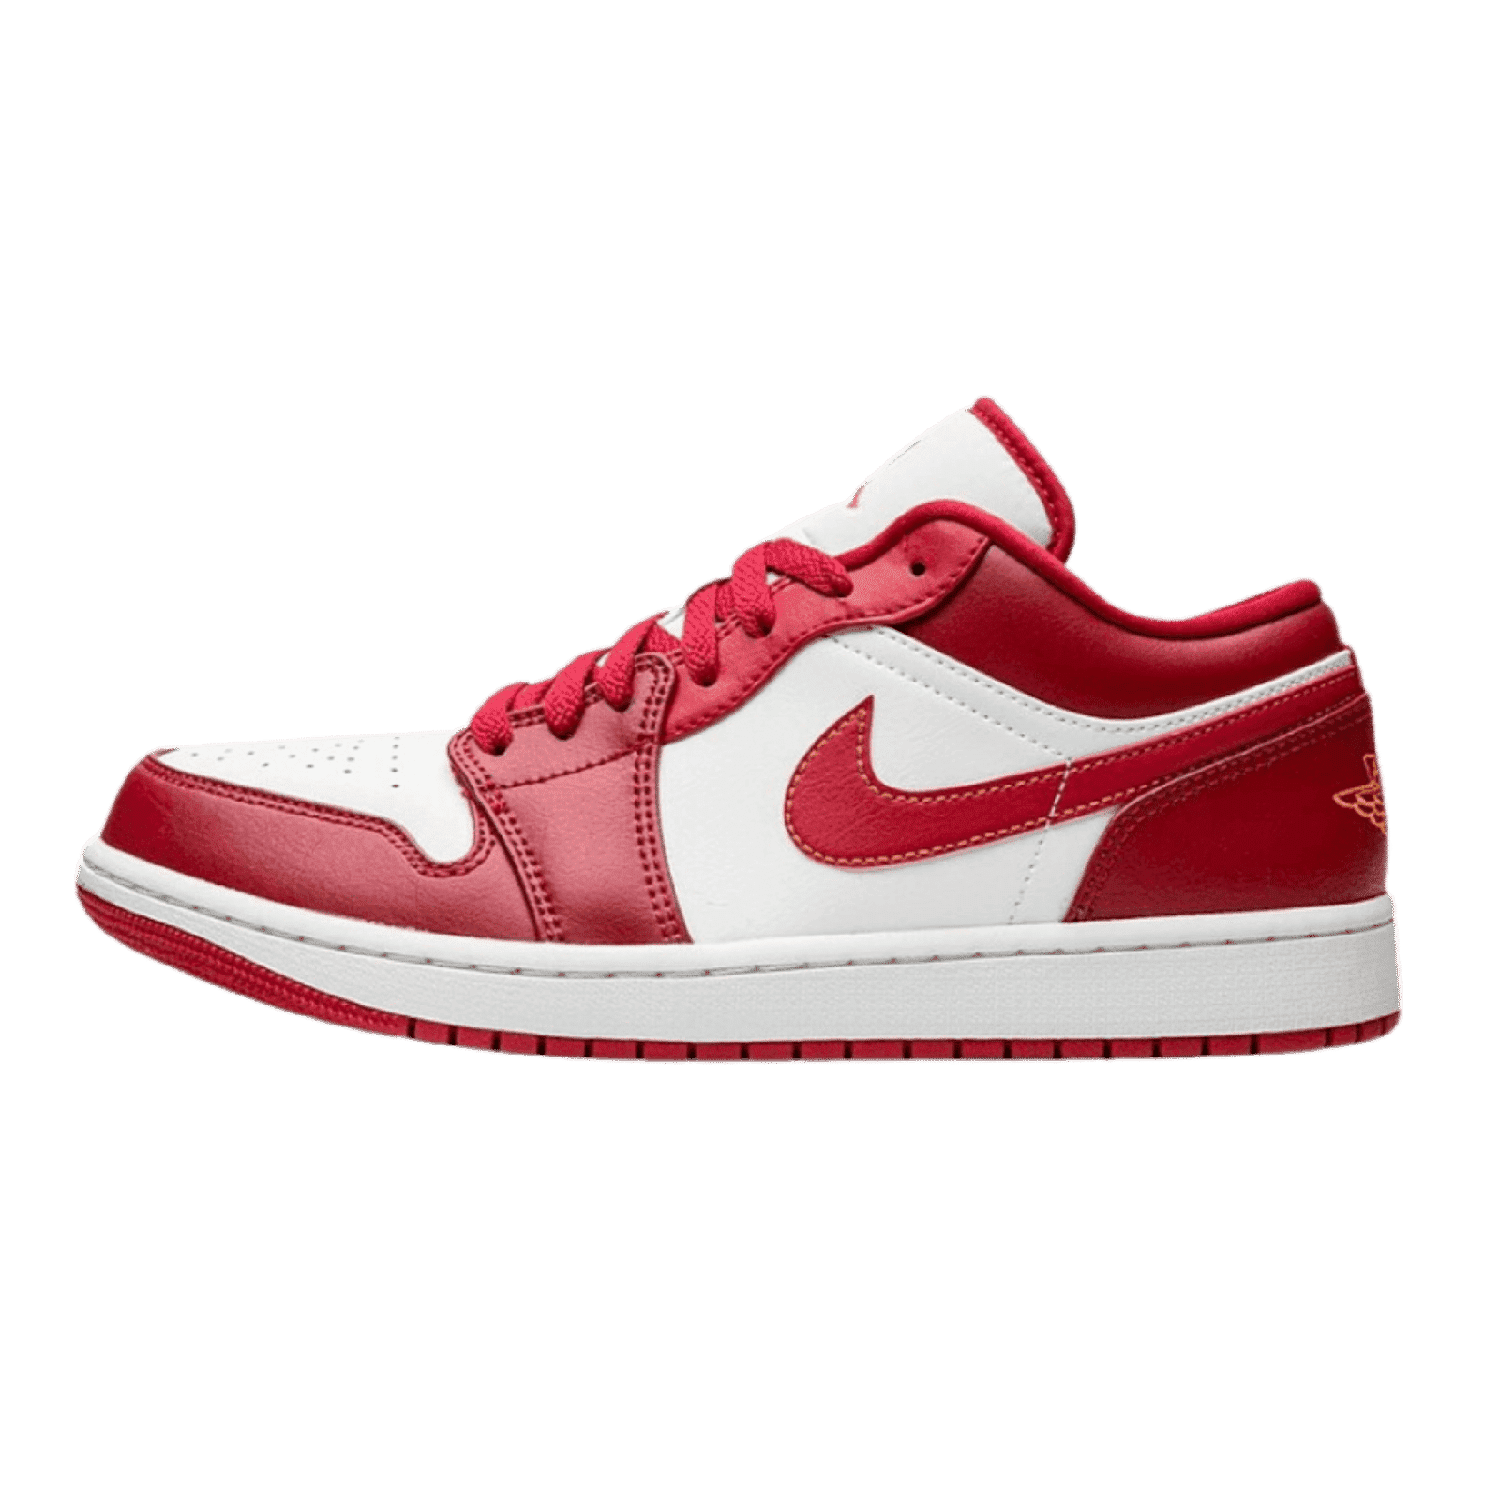 Air Jordan 1 Low Cardinal Red - Sneakerterritory; Sneaker Territory